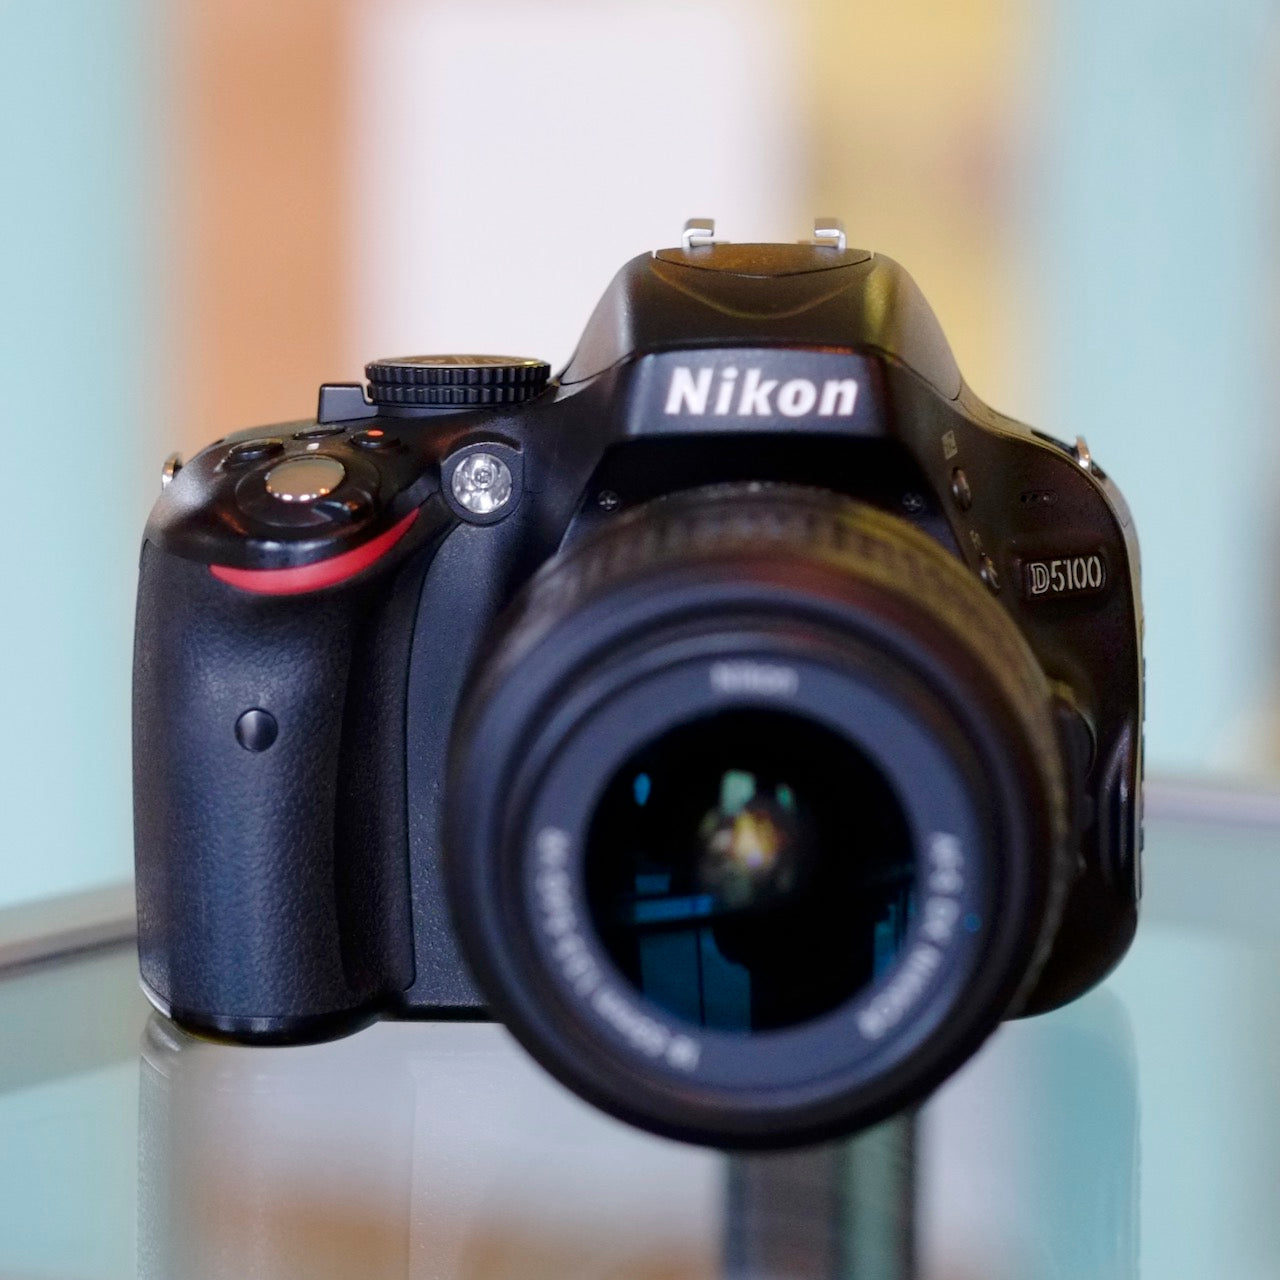 Nikon D5100 with 18-55mm f3.5-5.6G VR Nikkor